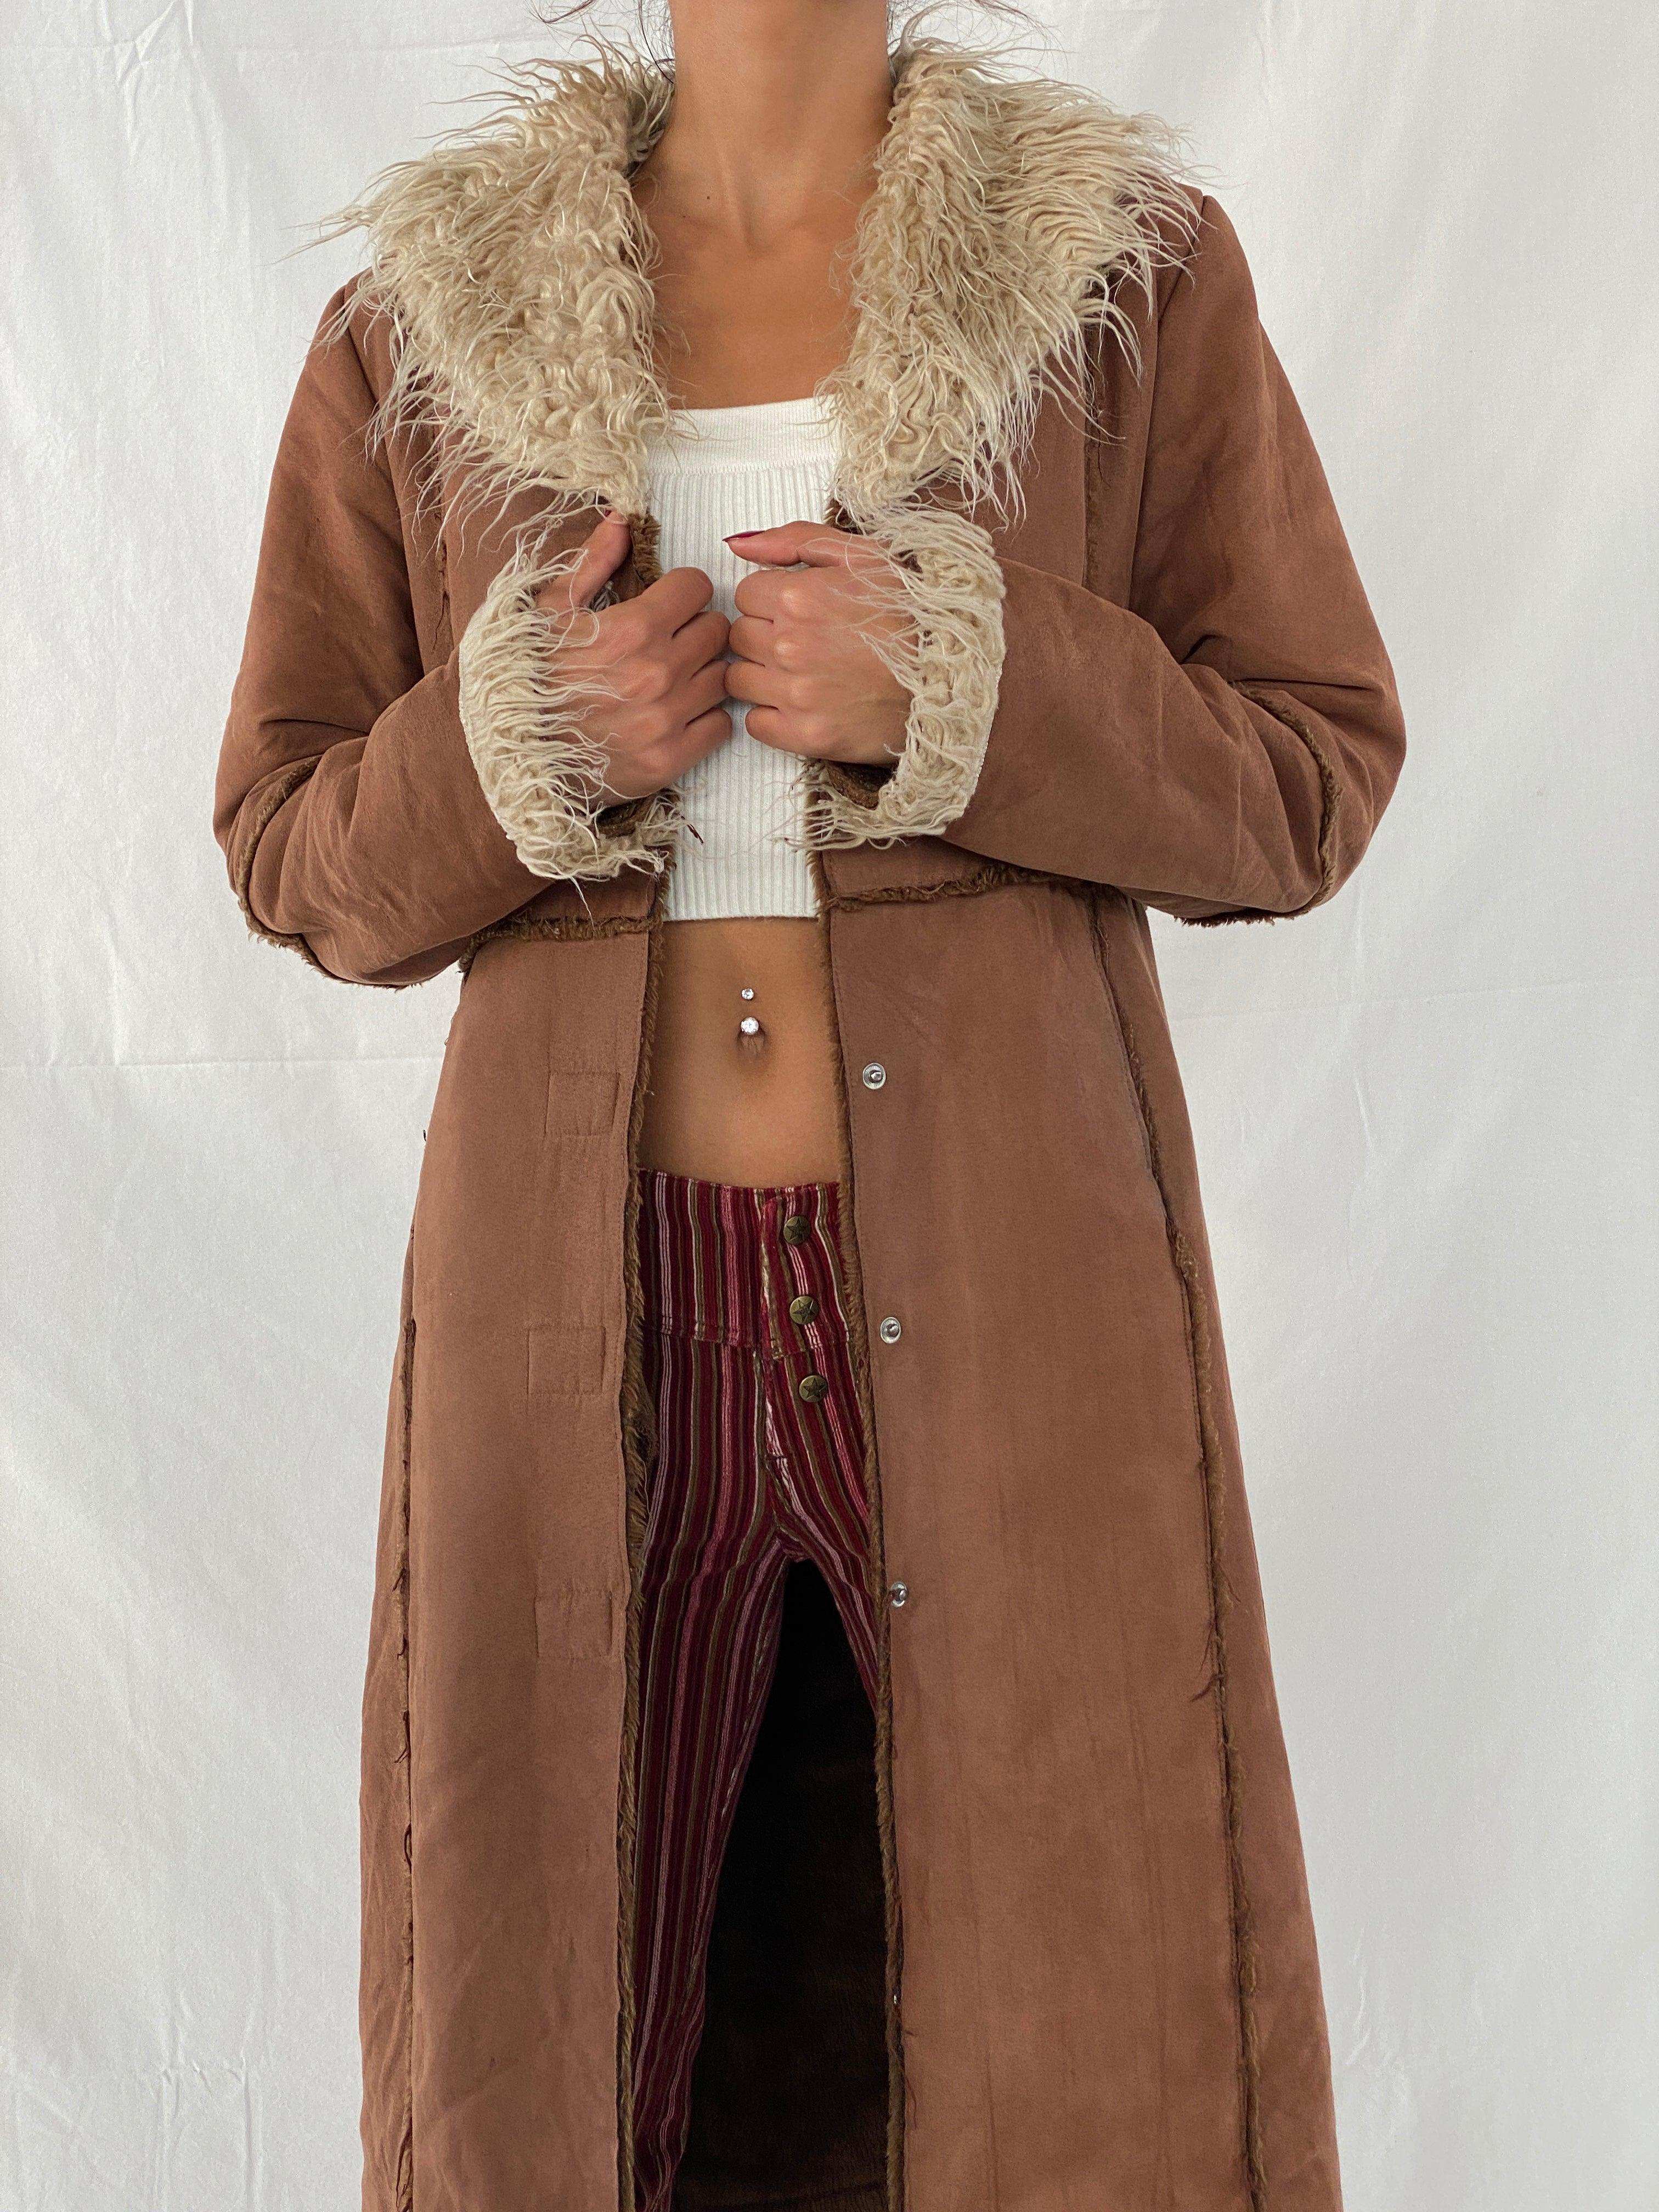 Vintage Y2K Gi & Jo Collection Afghan Style Coat - Balagan Vintage Coat 00s, Afghan style, coat, NEW IN, Tojan, vintage coat